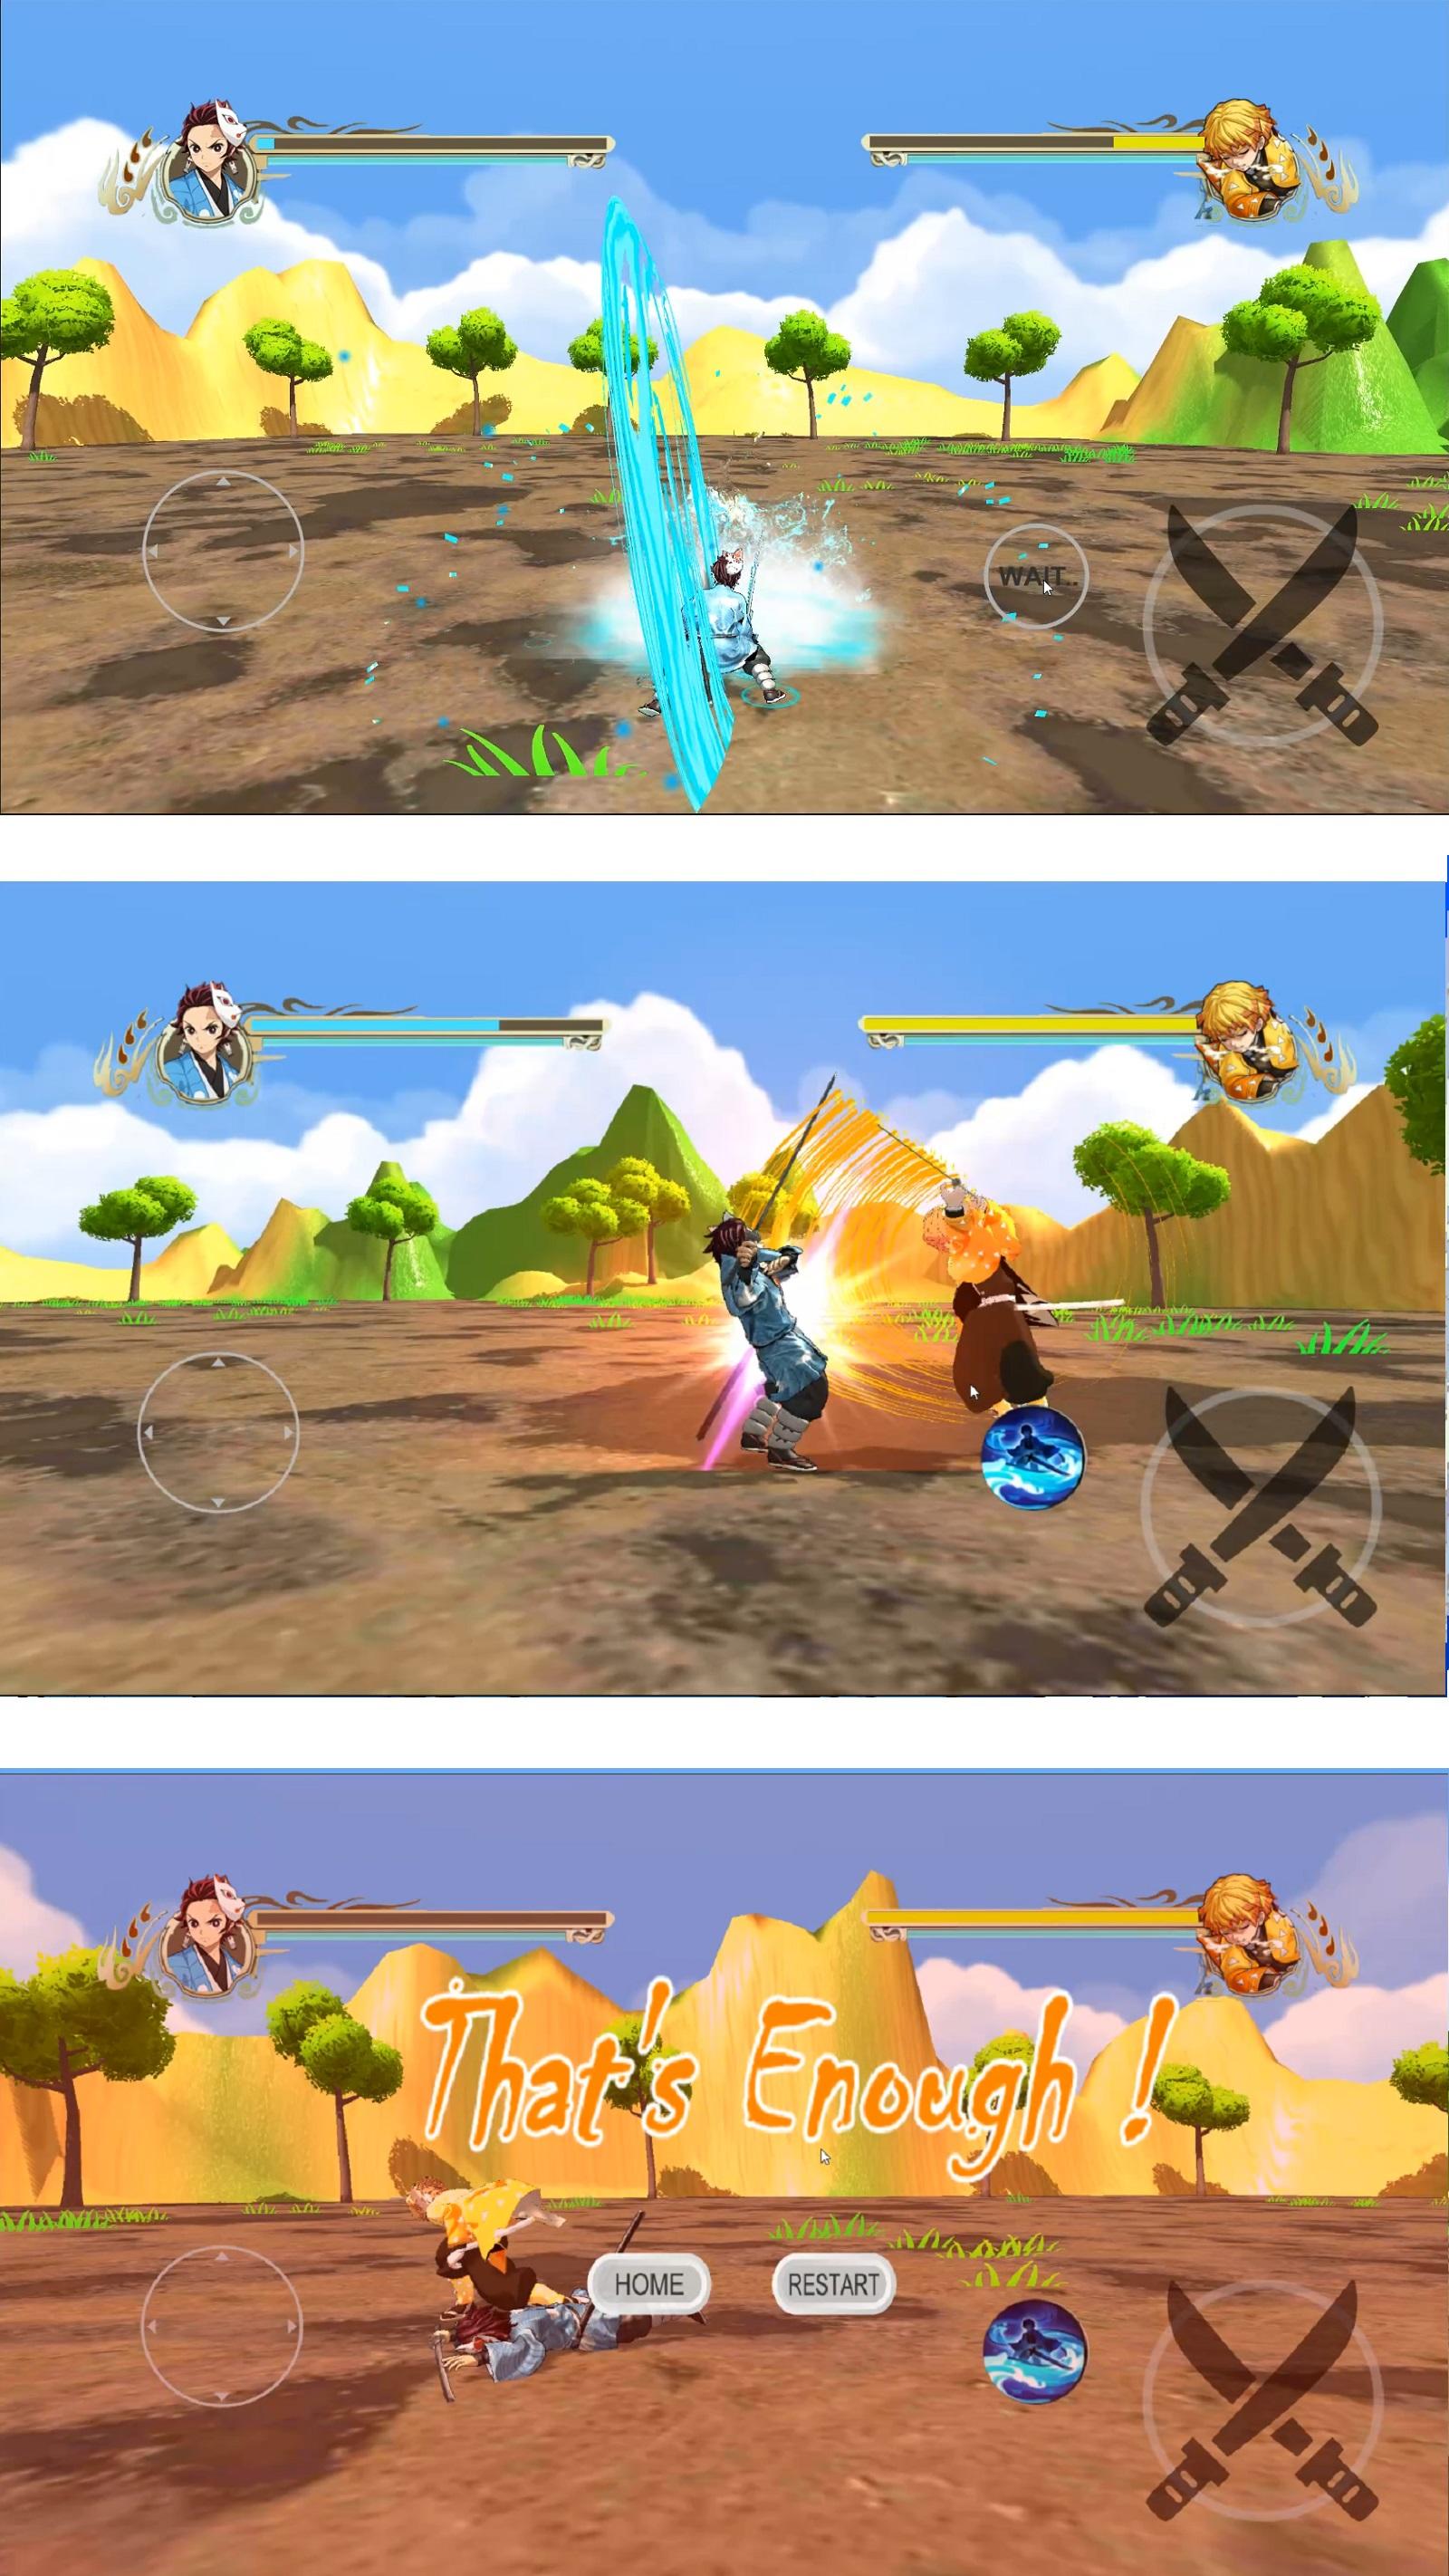 Kimetsu Fight - Demon Slayer screenshot game